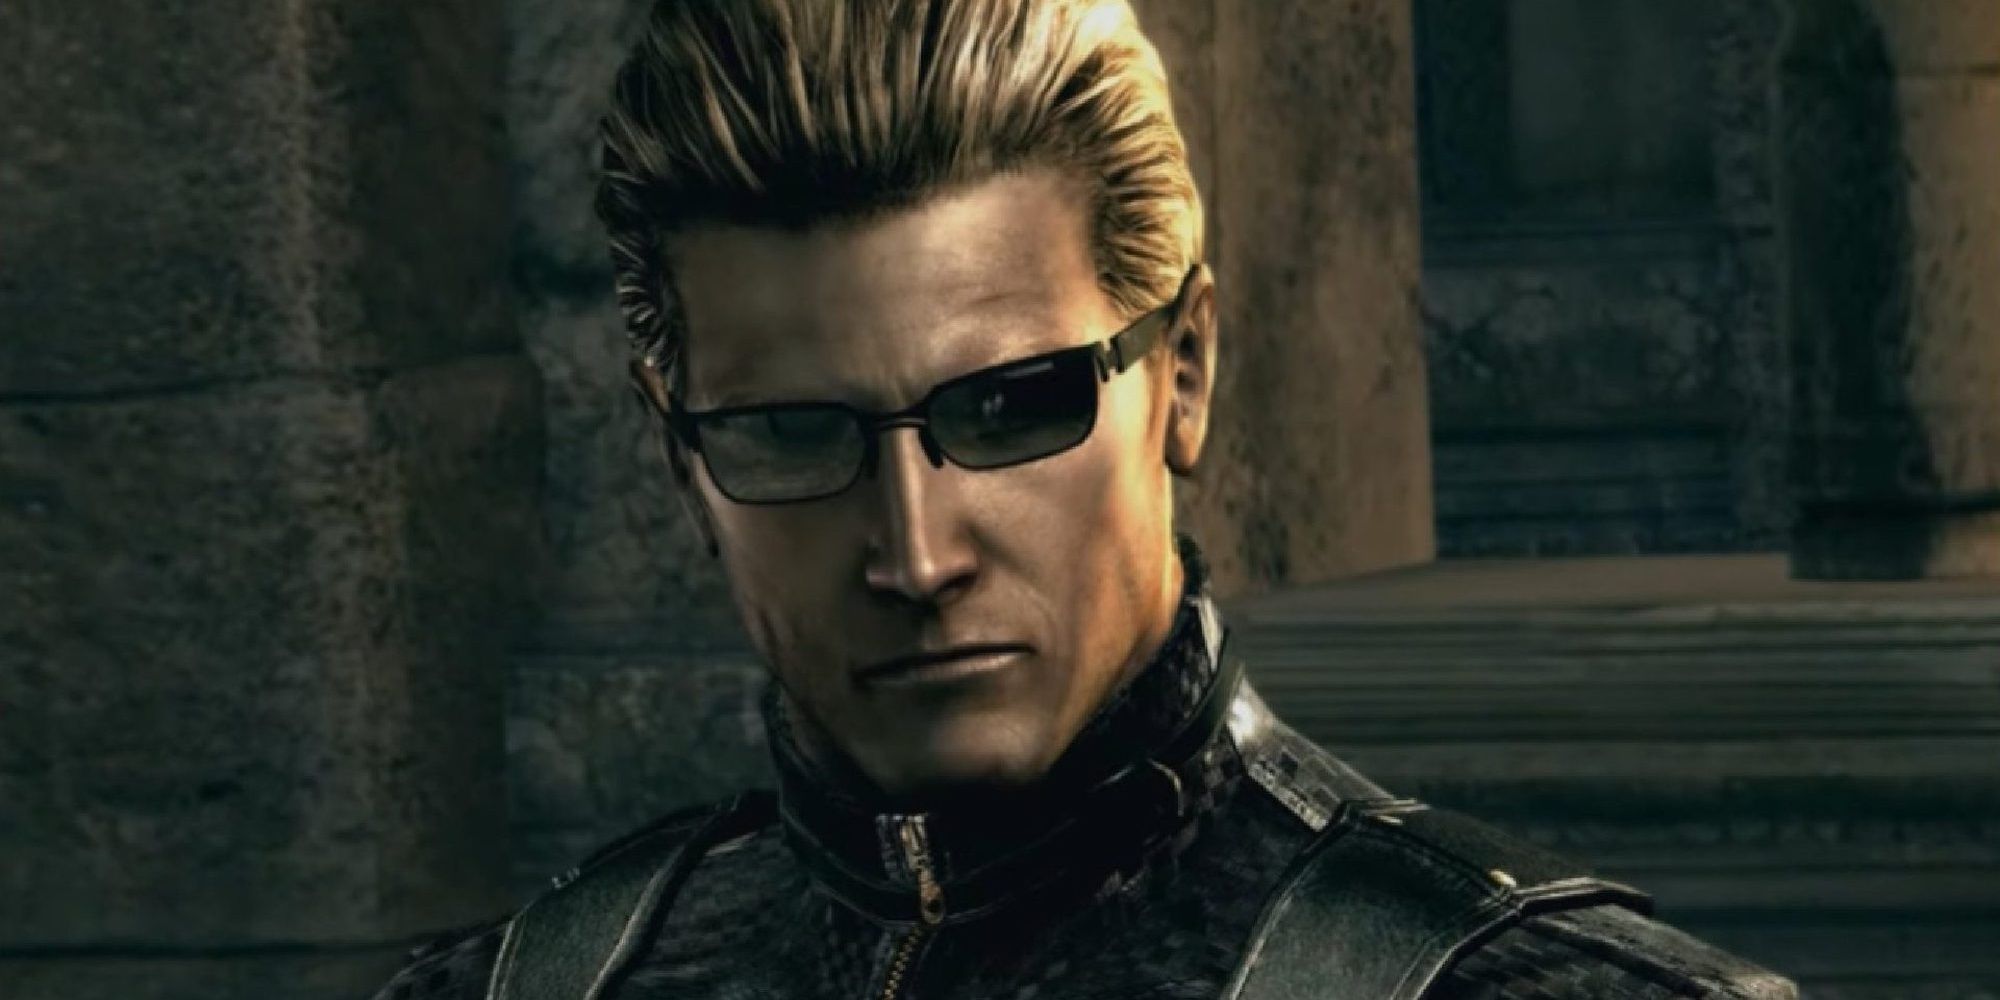 Albert Wesker as depicted in Resident Evil 5